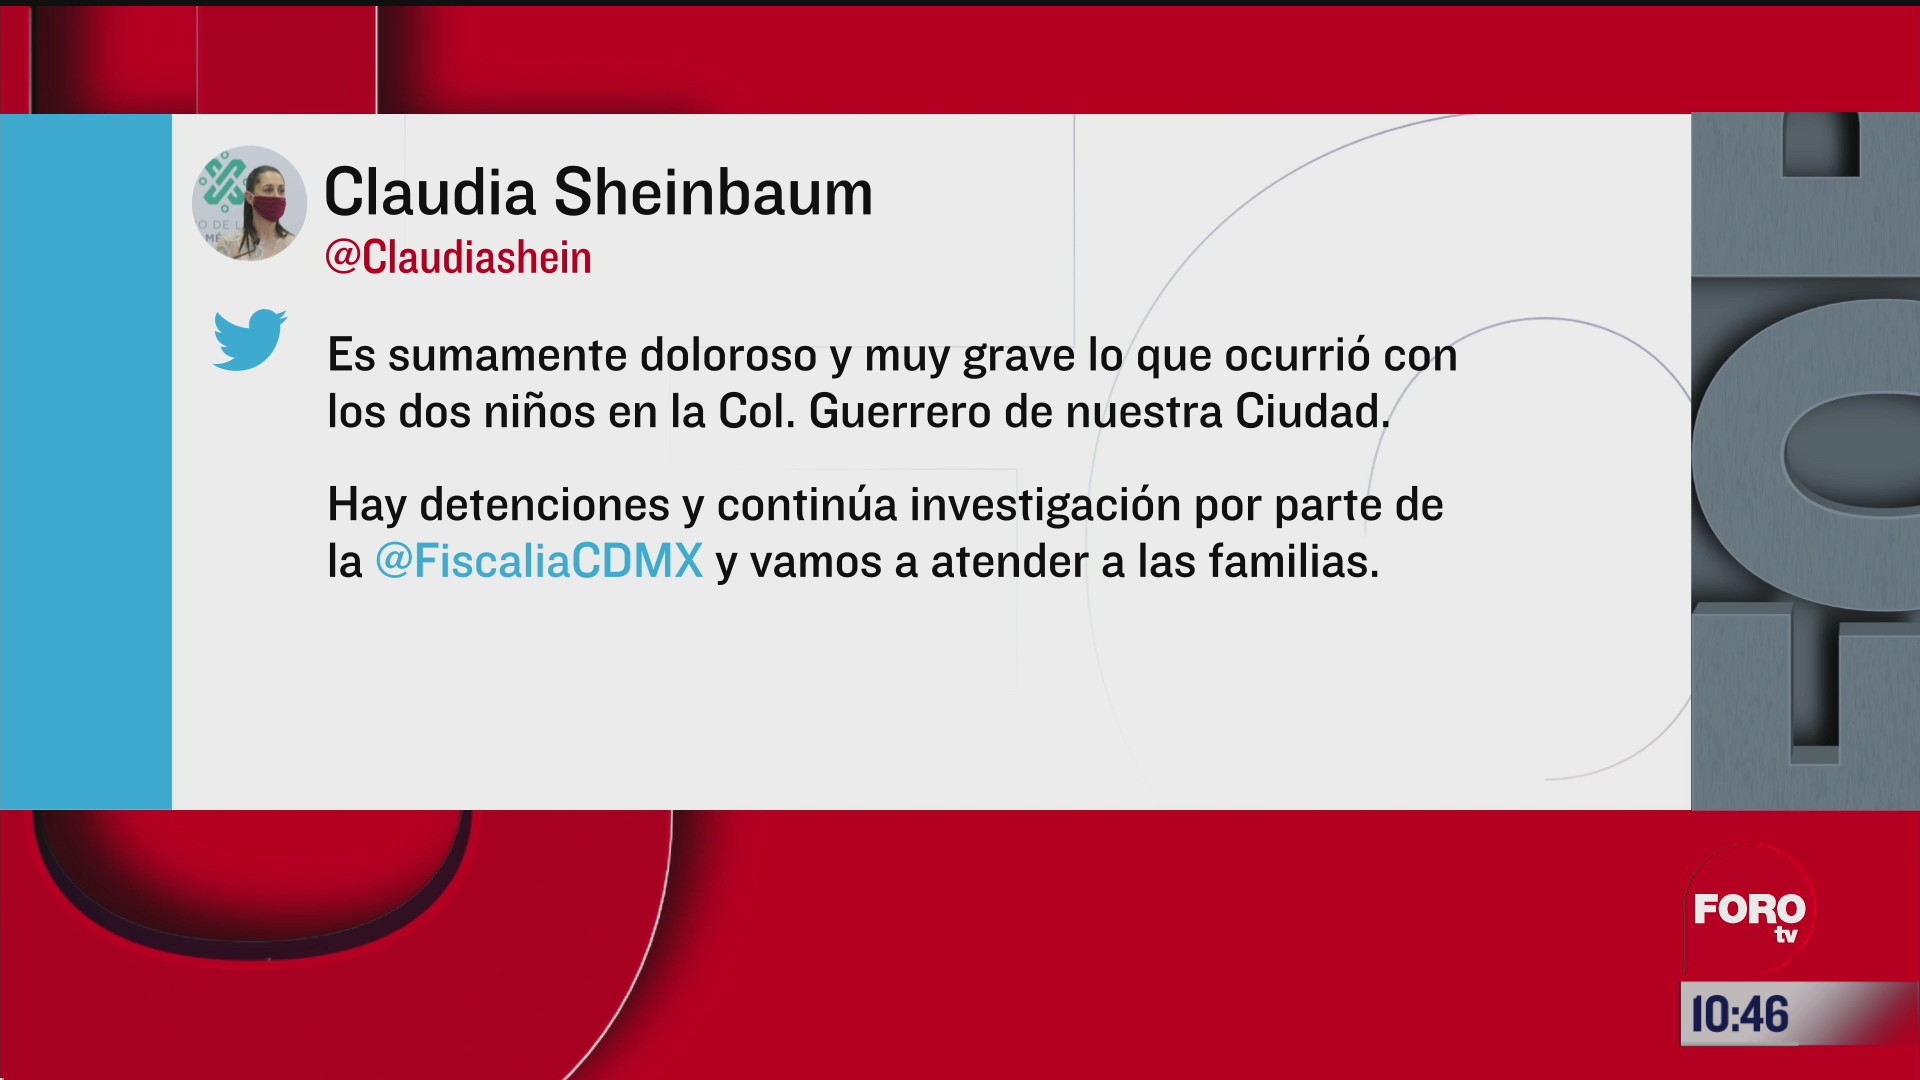 doloroso el asesinato de dos menores en la cdmx dice sheinbaum